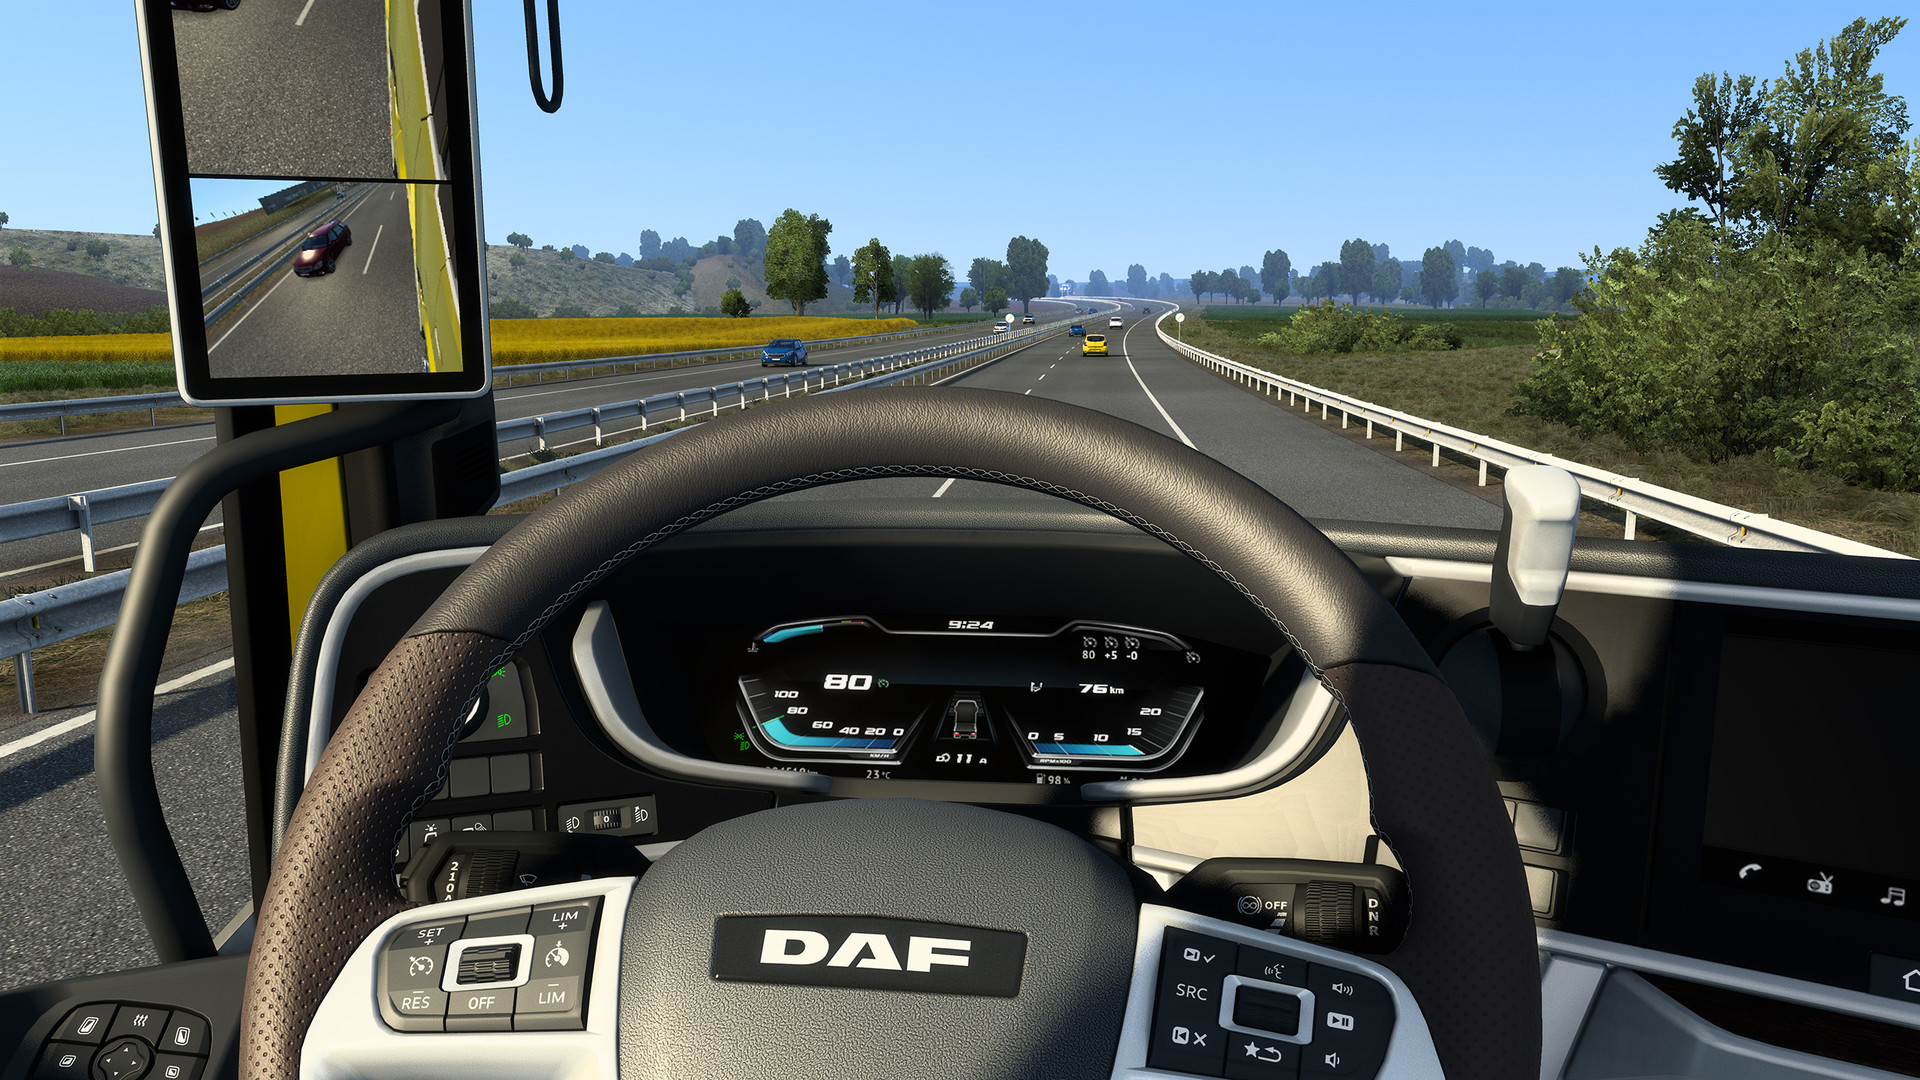 Euro Truck Simulator 2 - DAF XG/XG+ on Steam, daf 